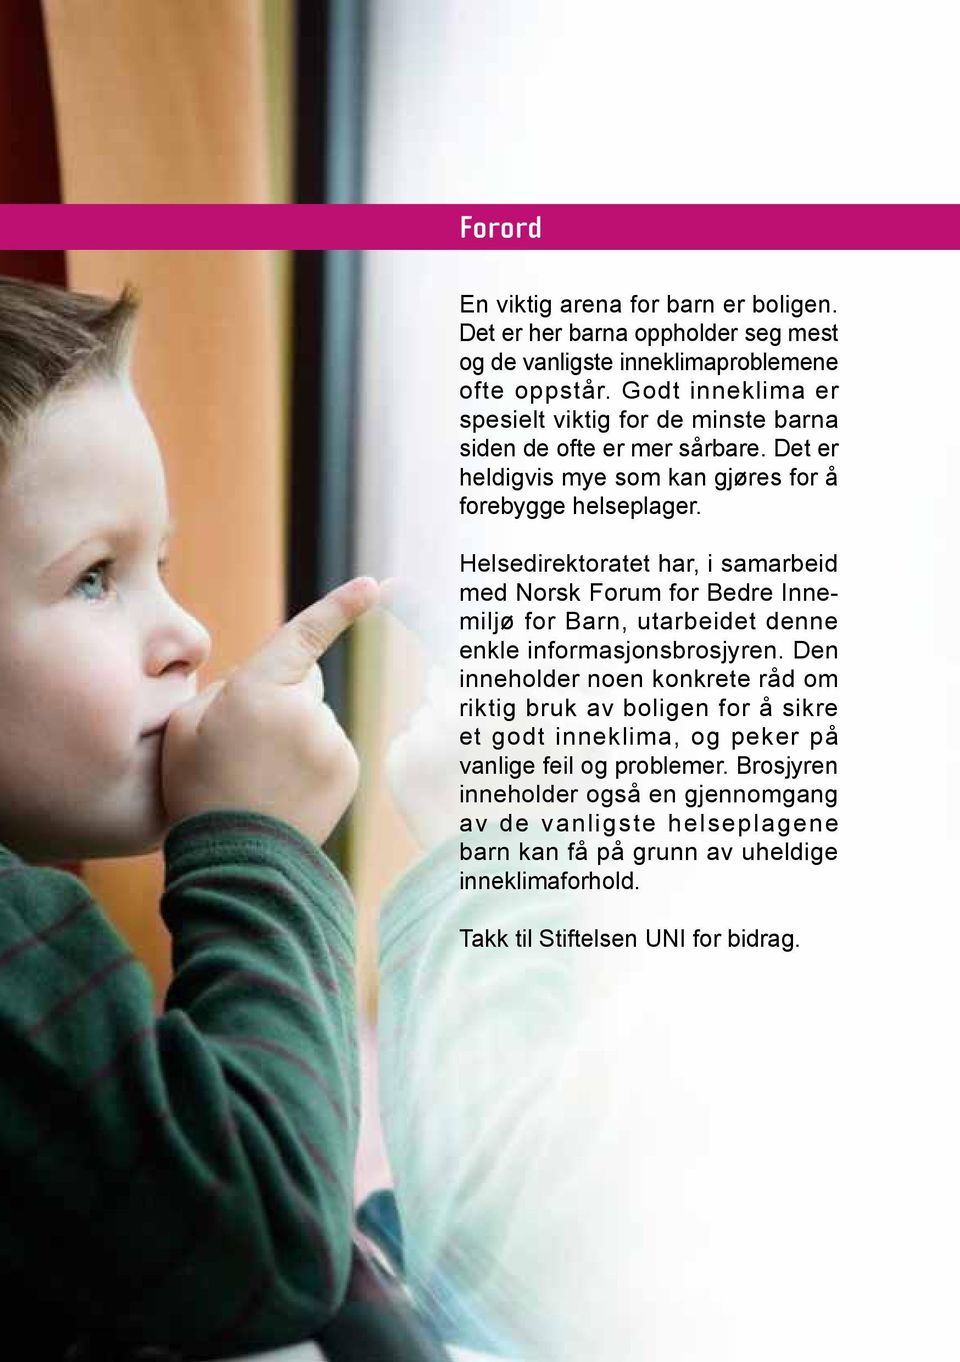 Helsedirektoratet har, i samarbeid med Norsk Forum for Bedre Innemiljø for Barn, utarbeidet denne enkle informasjonsbrosjyren.